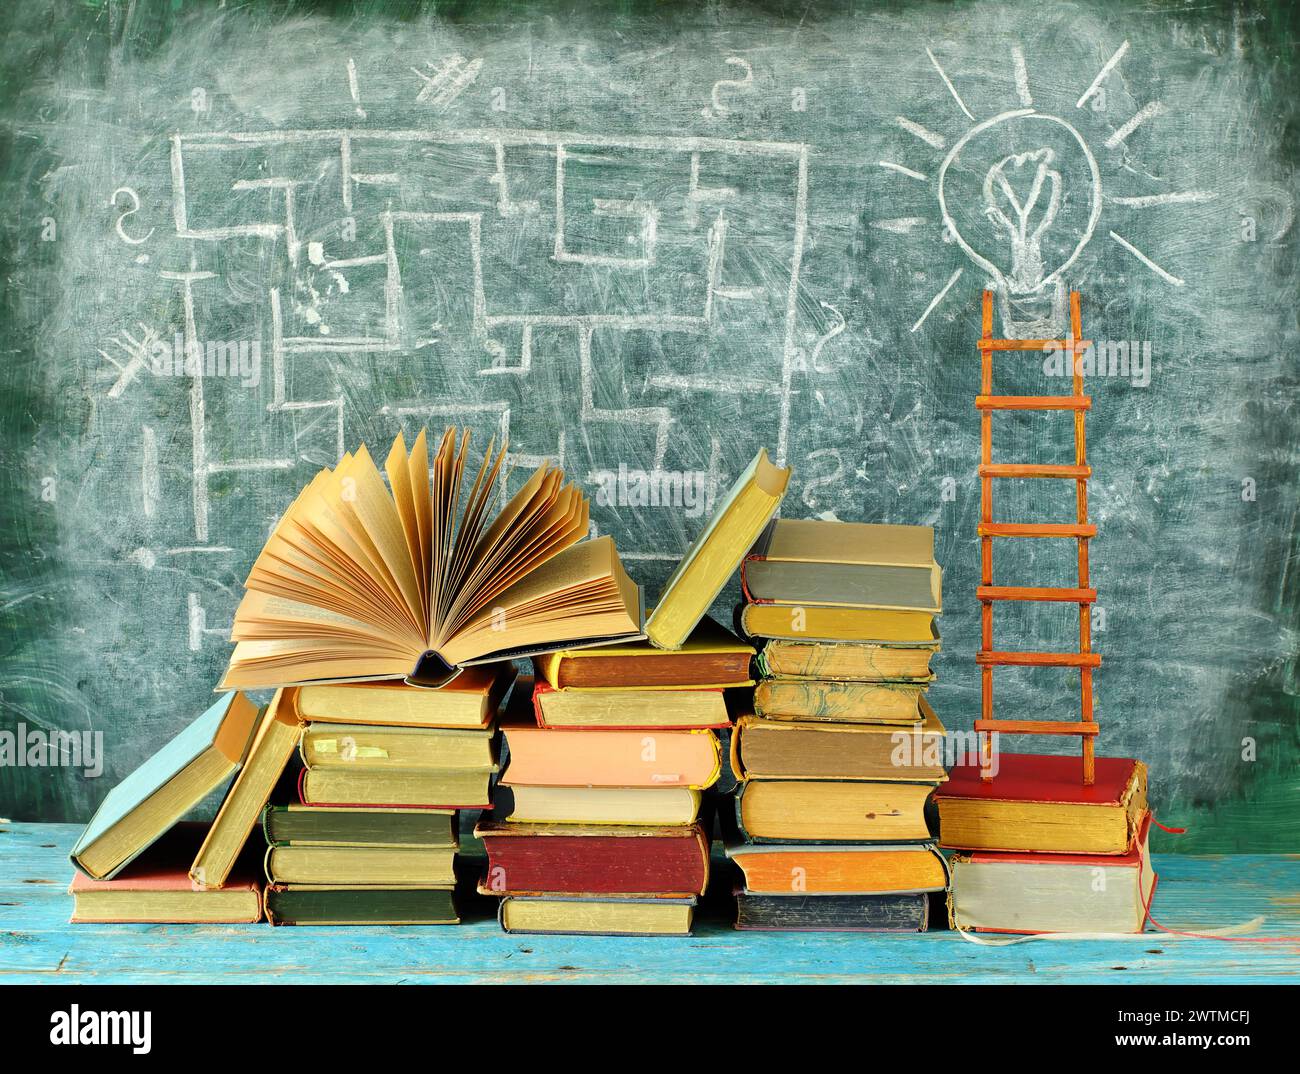 Bildung gibt Orientierung, Bücher, Tafel und Leiter des Erfolgs.Lernen, Wissen, Humanismus, zurück zur Schule Konzept Stockfoto